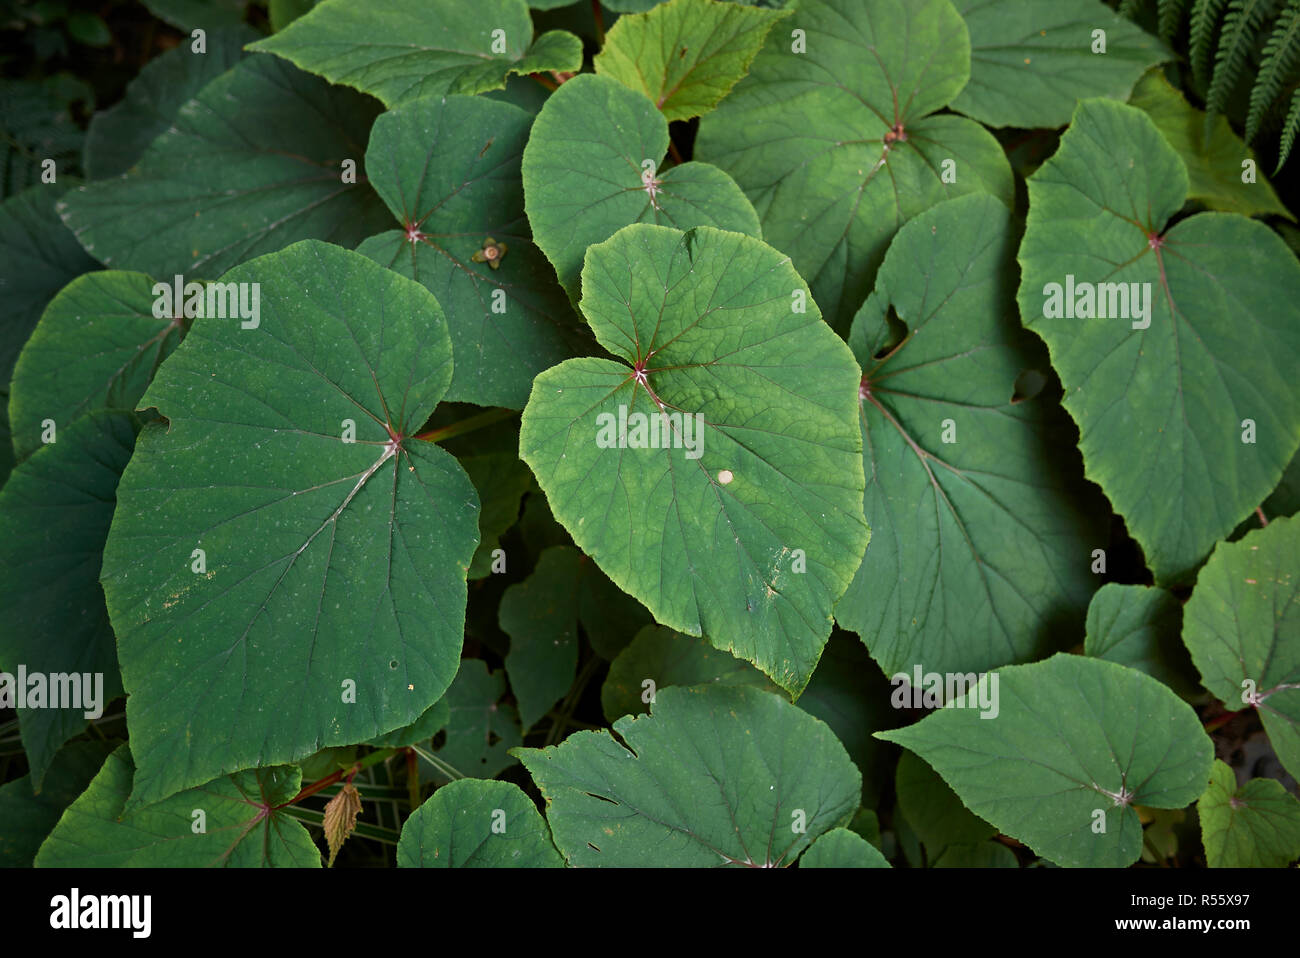 Begonia grandis foliage Stock Photo